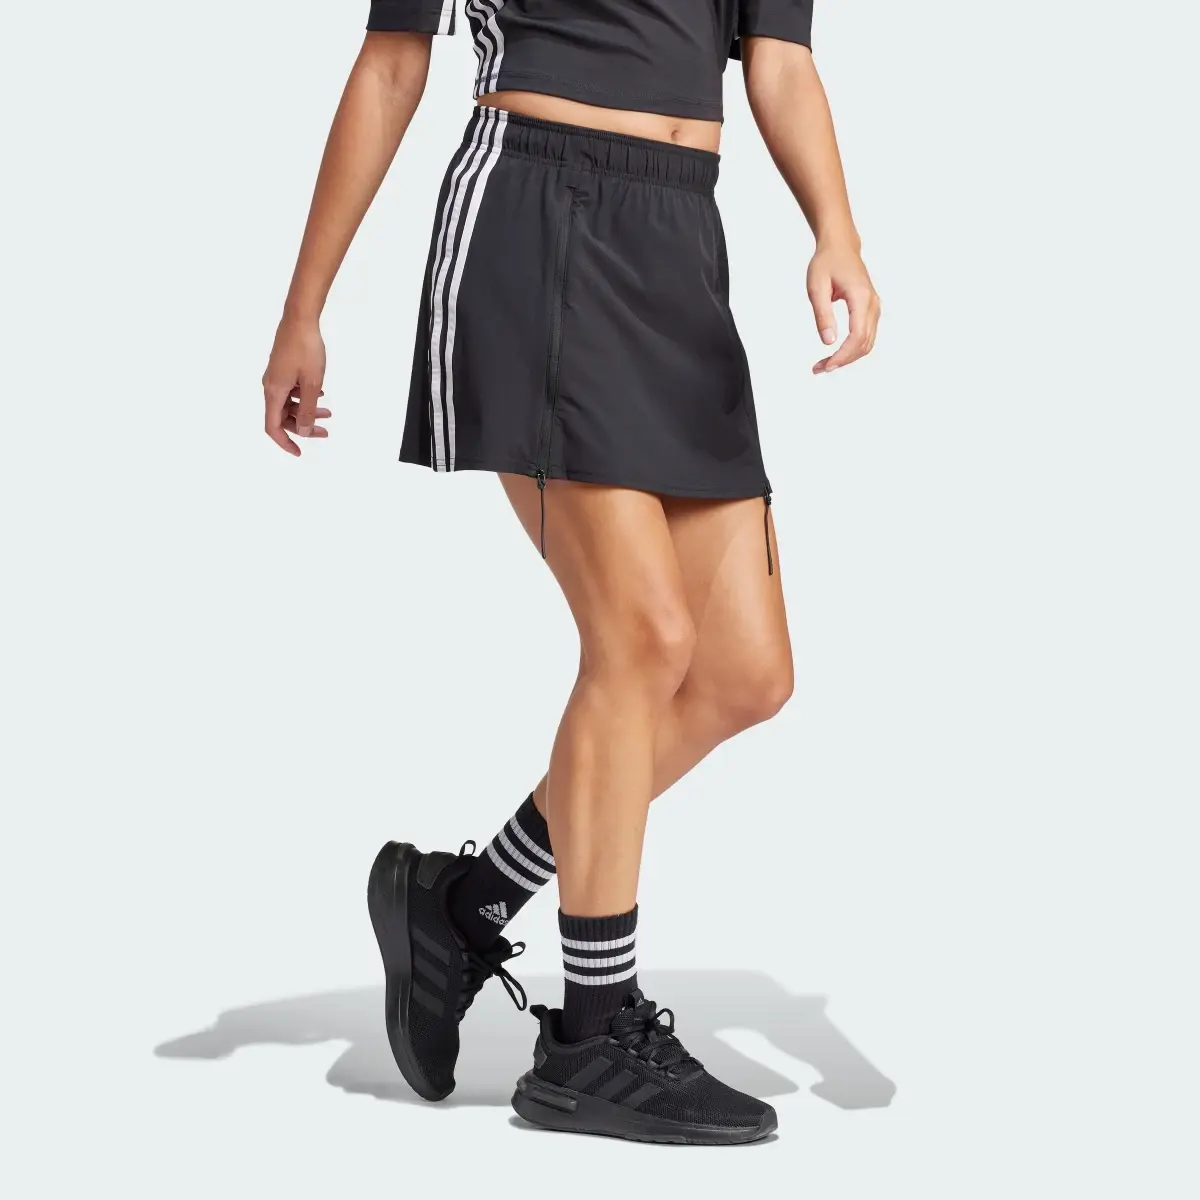 Adidas Express All-Gender Skirt. 3